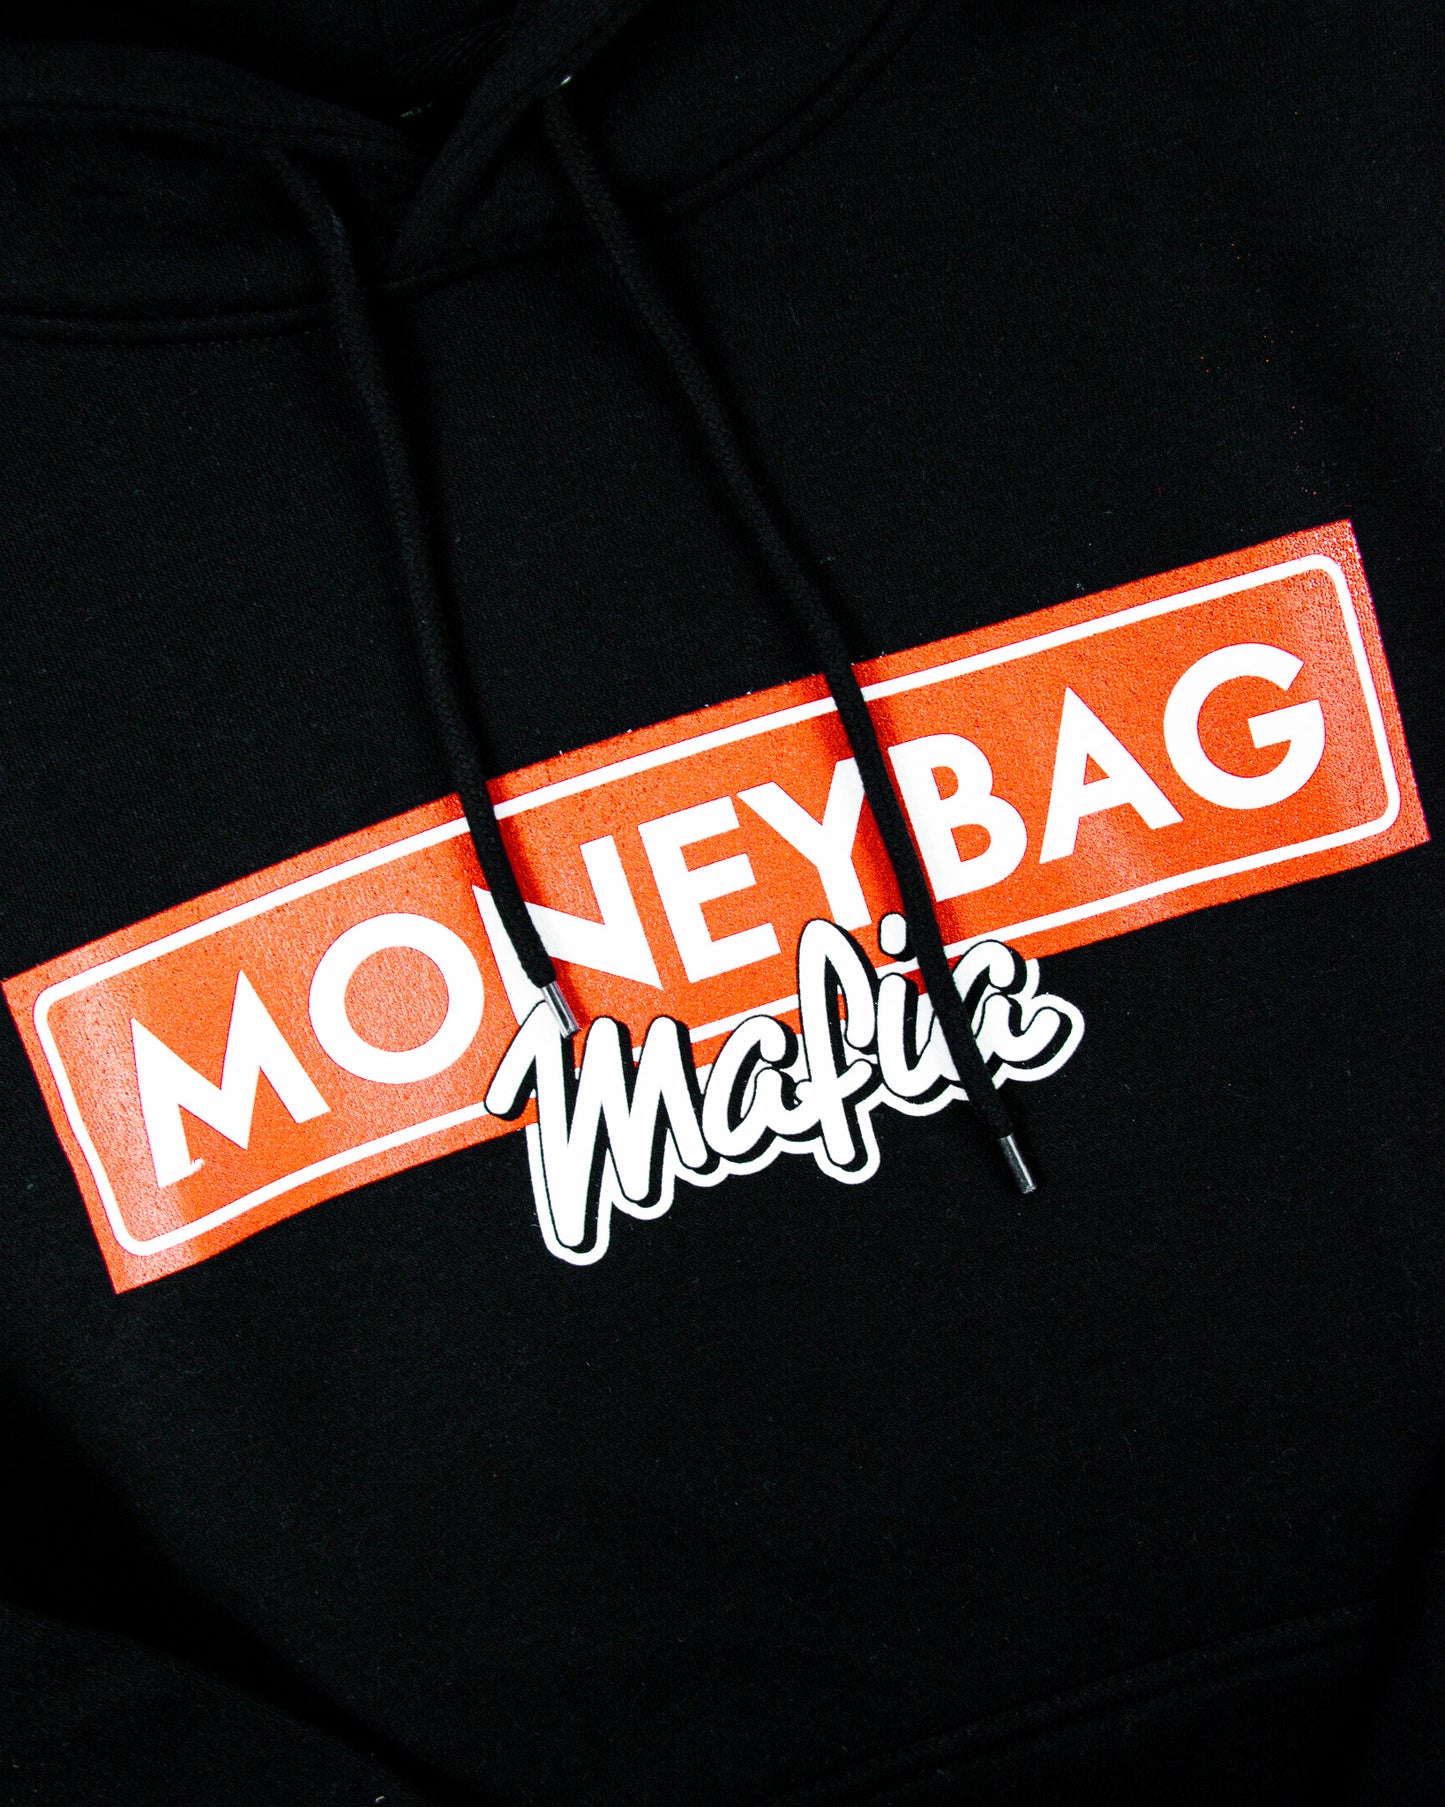 Money Bag Hoodie